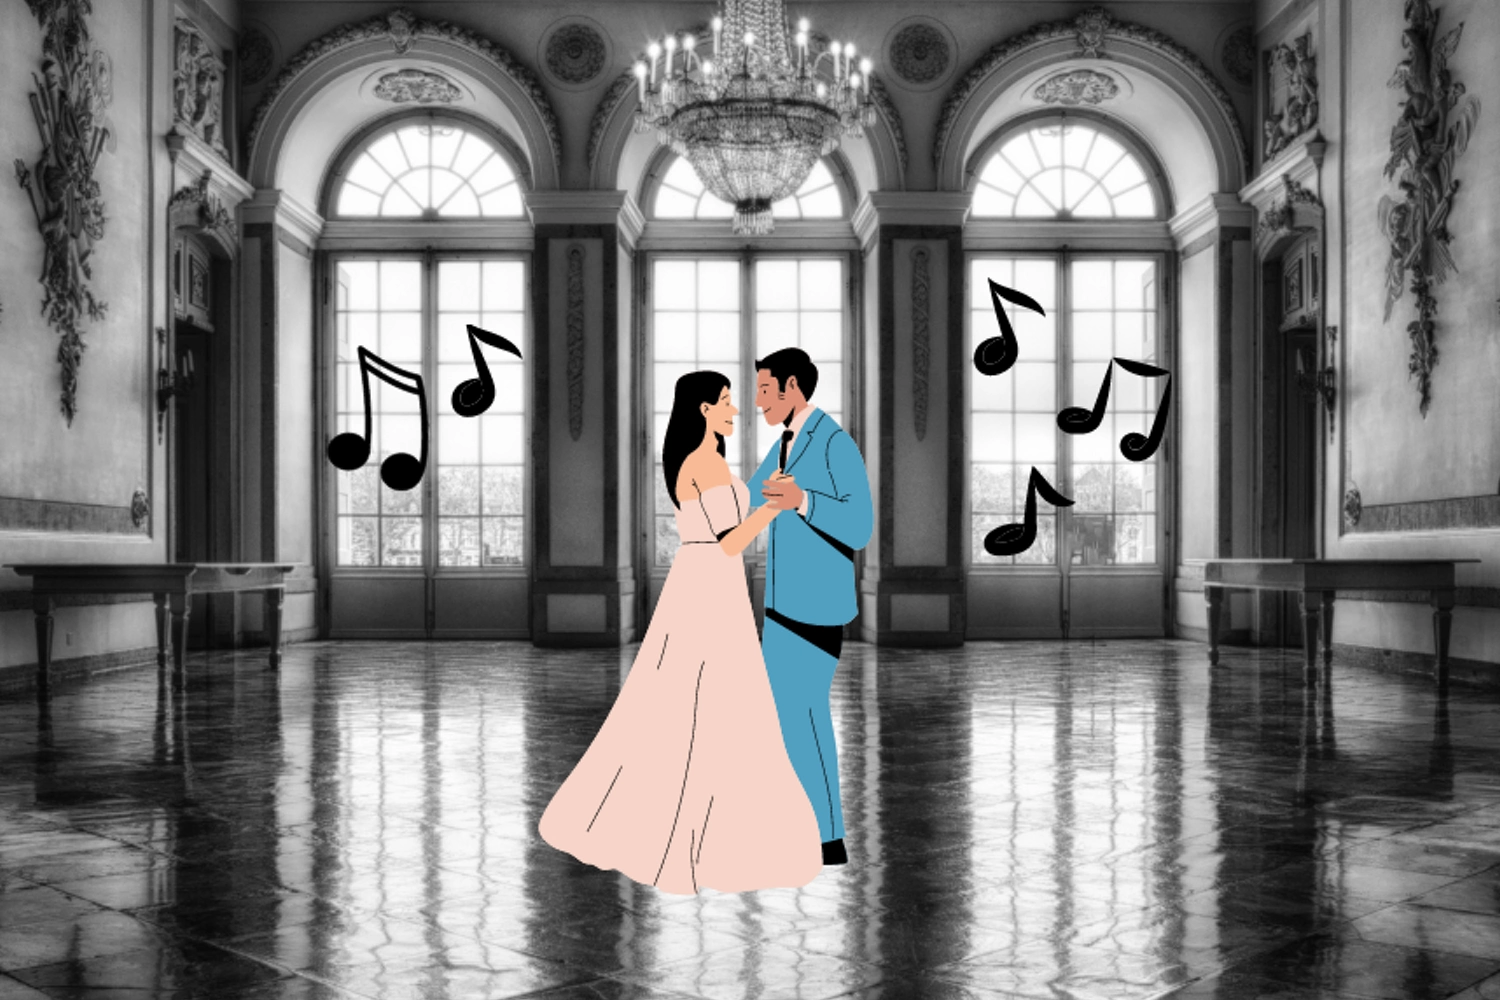 Collage erstellt mit Canva: Schwarzweißfoto eines Ballsaals. In der Mitte die Grafik eines Tanzpaares. Rechts und links neben dem Paar in den hohen Fenstern sieht man Grafiken von Musiknotation.